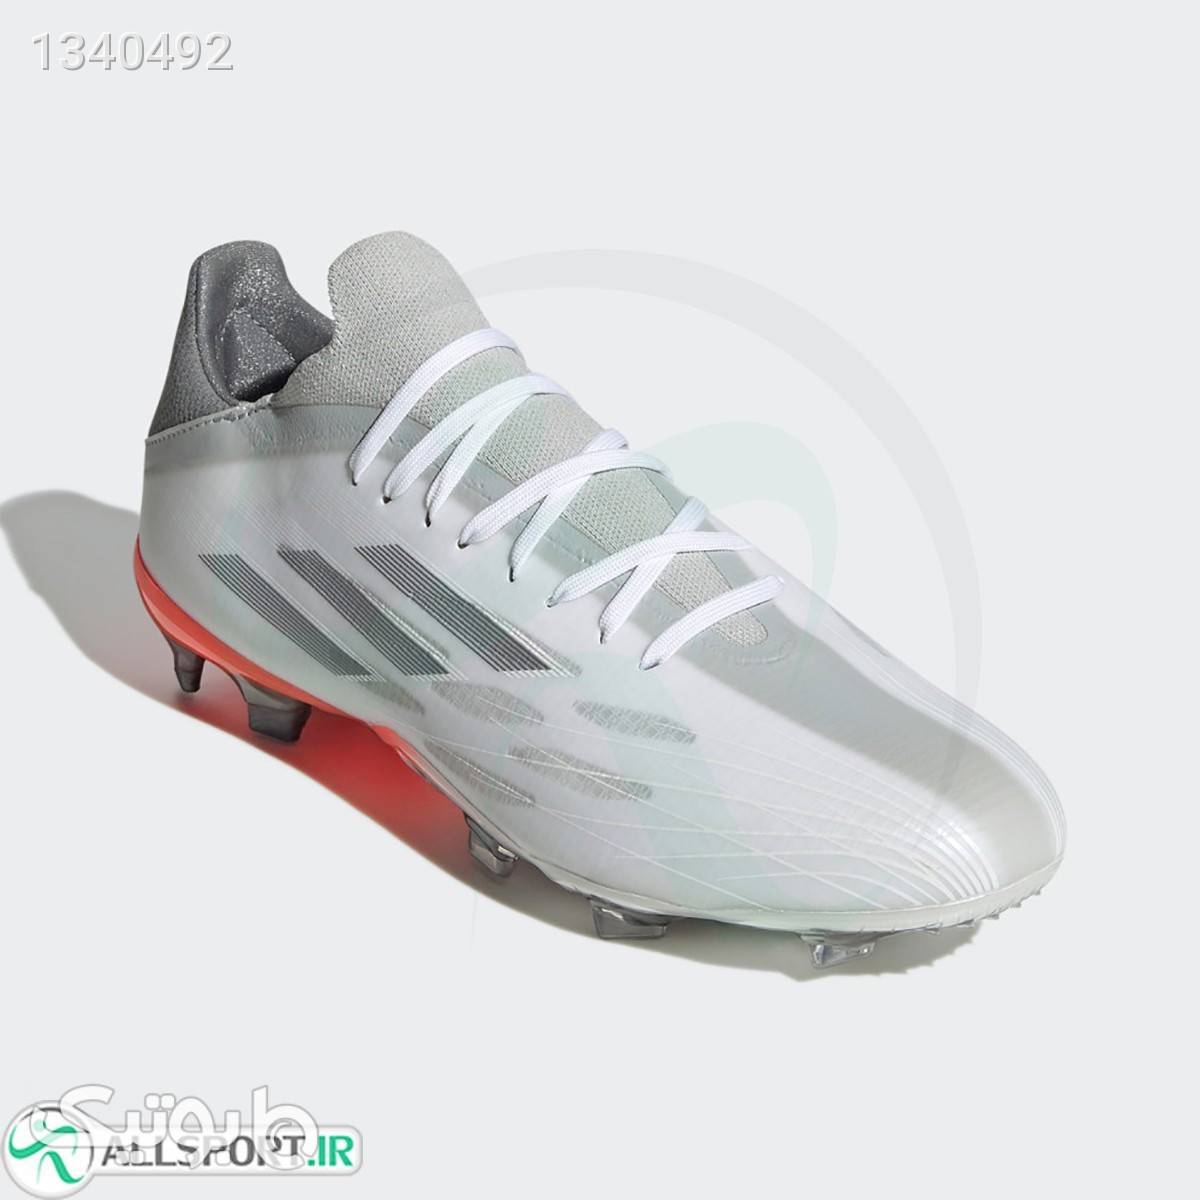 کفش فوتبال آدیداس ایکس Adidas X Speedflow fy3287 سفید كتانی مردانه